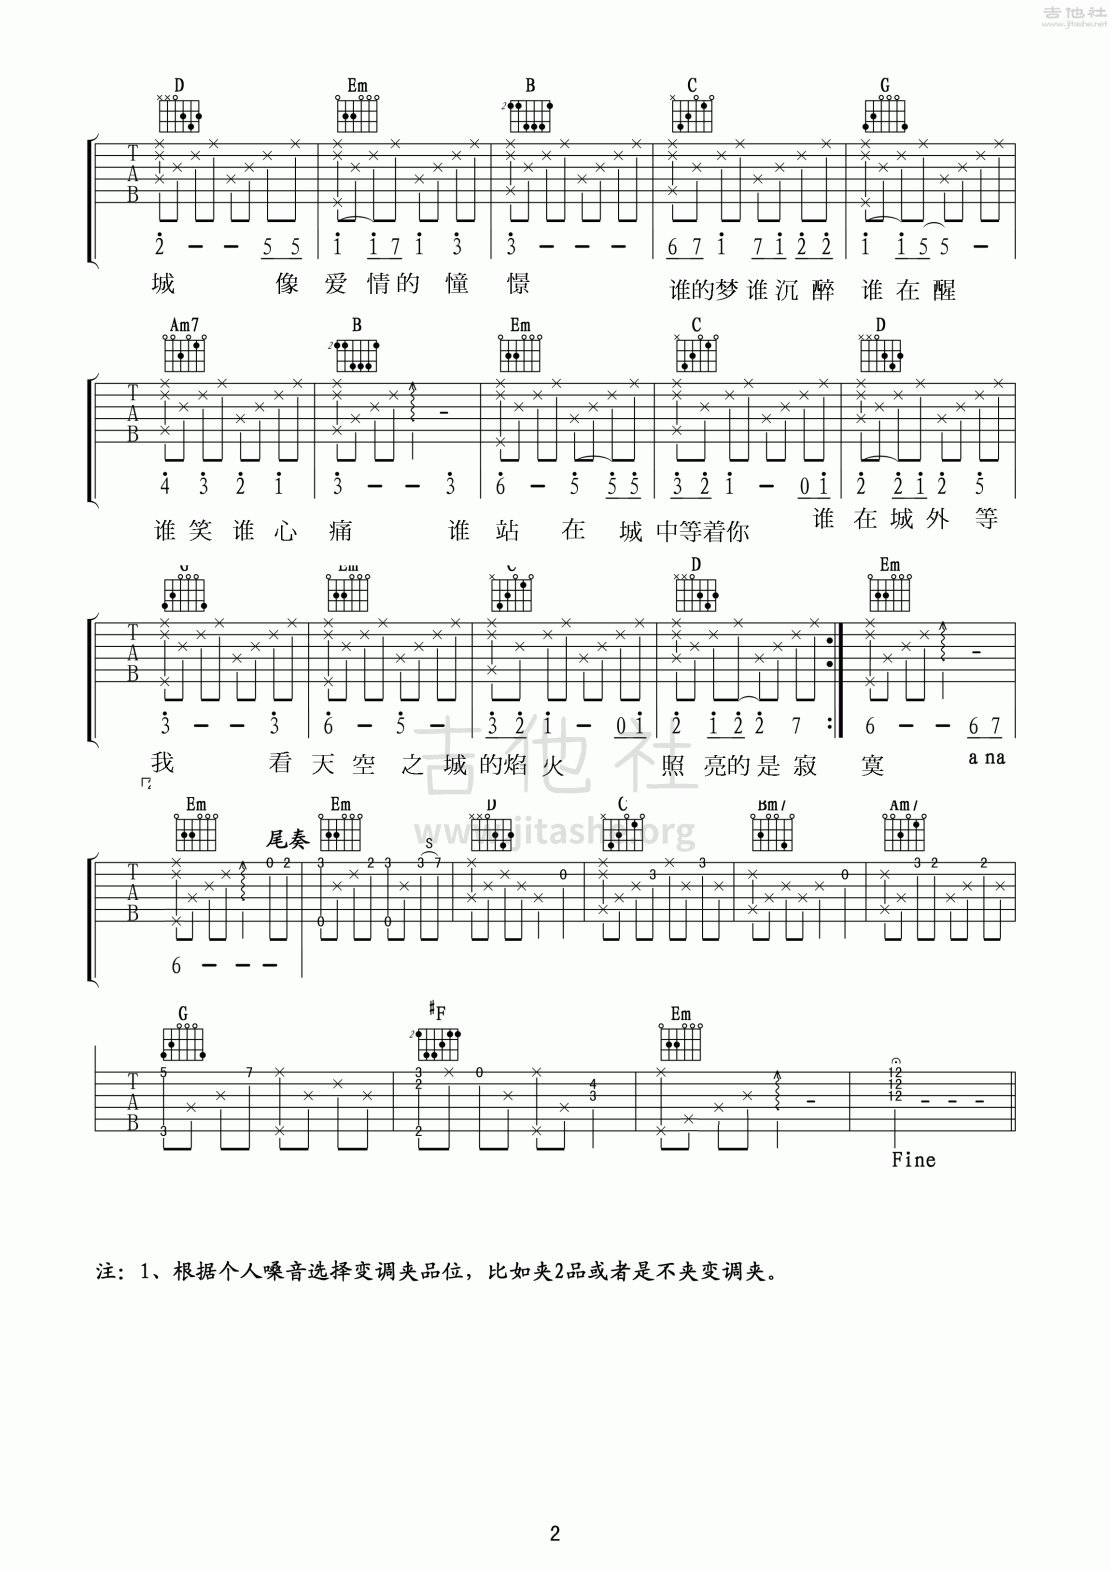 打印:天空之城吉他谱_动漫游戏(ACG)_天空之城中文版弹唱_2.gif